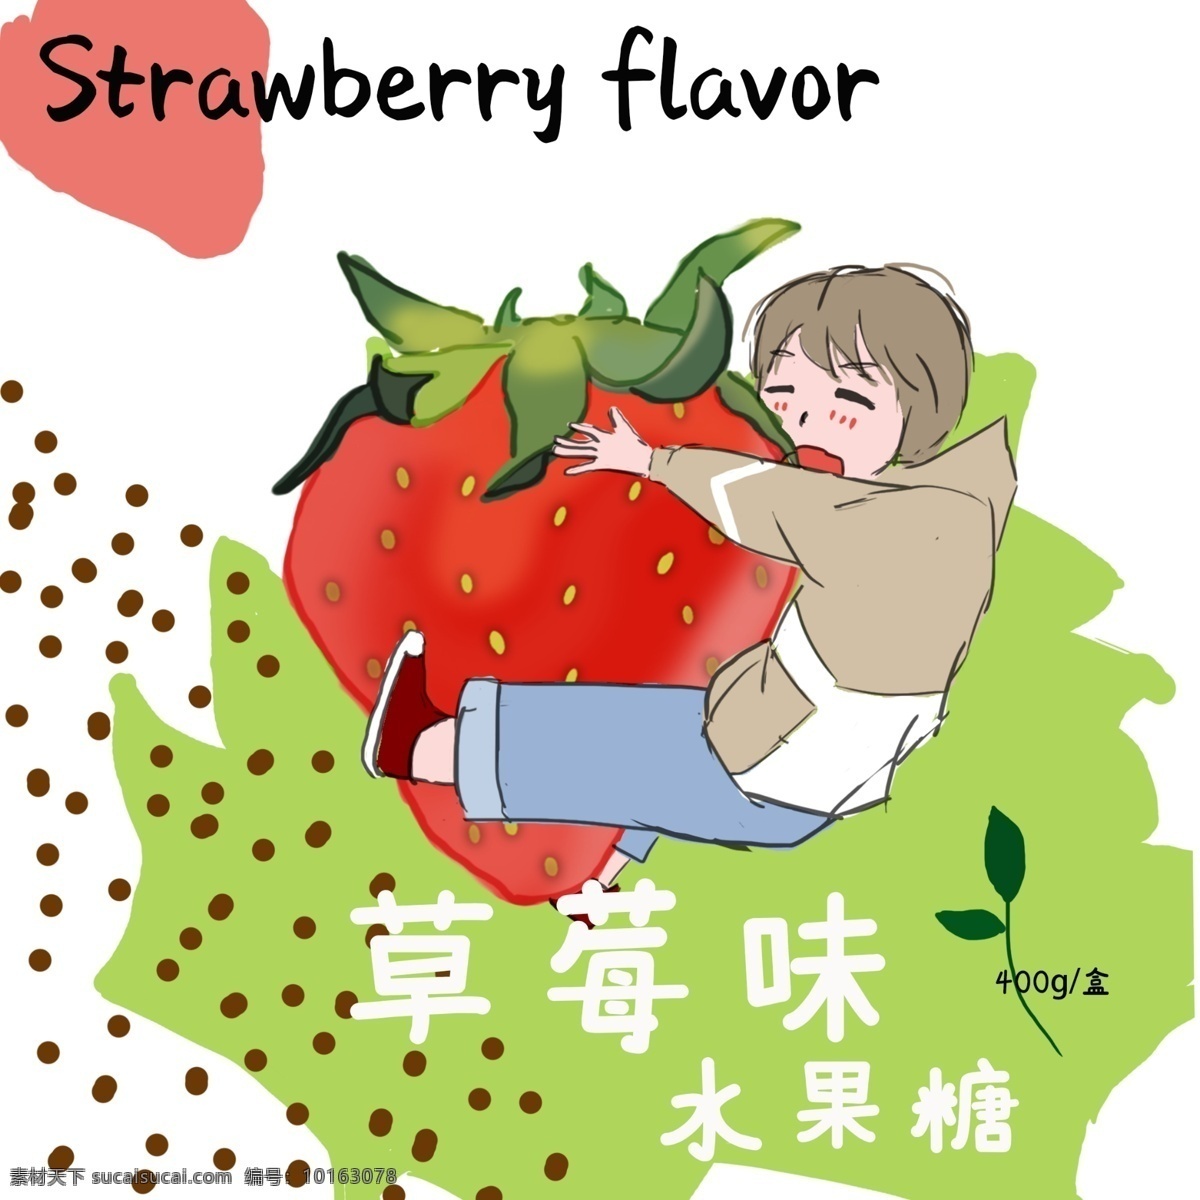 包装盒 草莓 味 水果糖 草莓味 插画